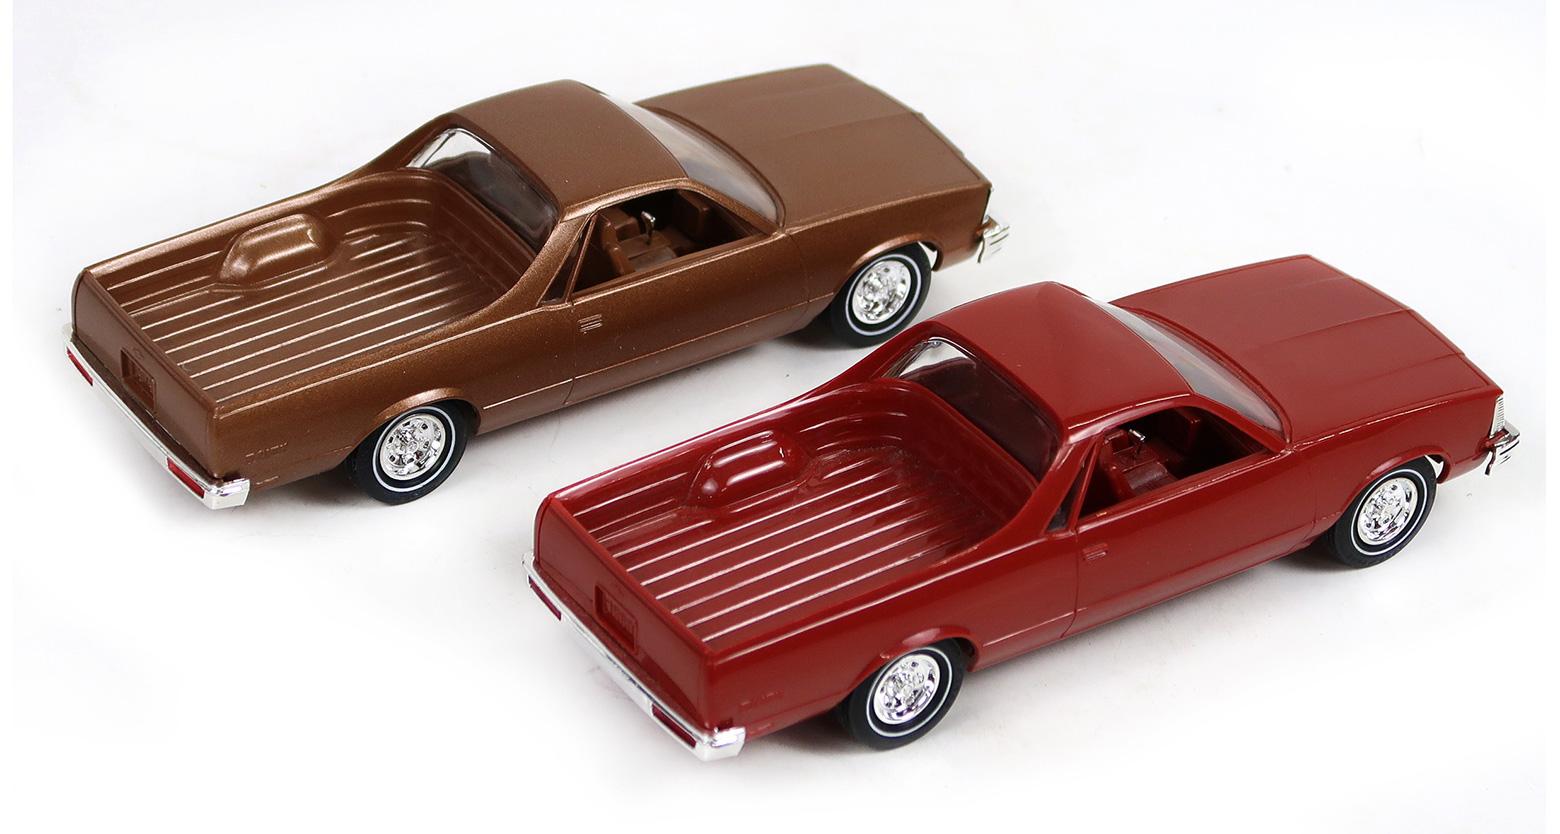 Toy Scale Models, Dealer Promo (2), 1979 El Camino & 1980 El Camino, New In